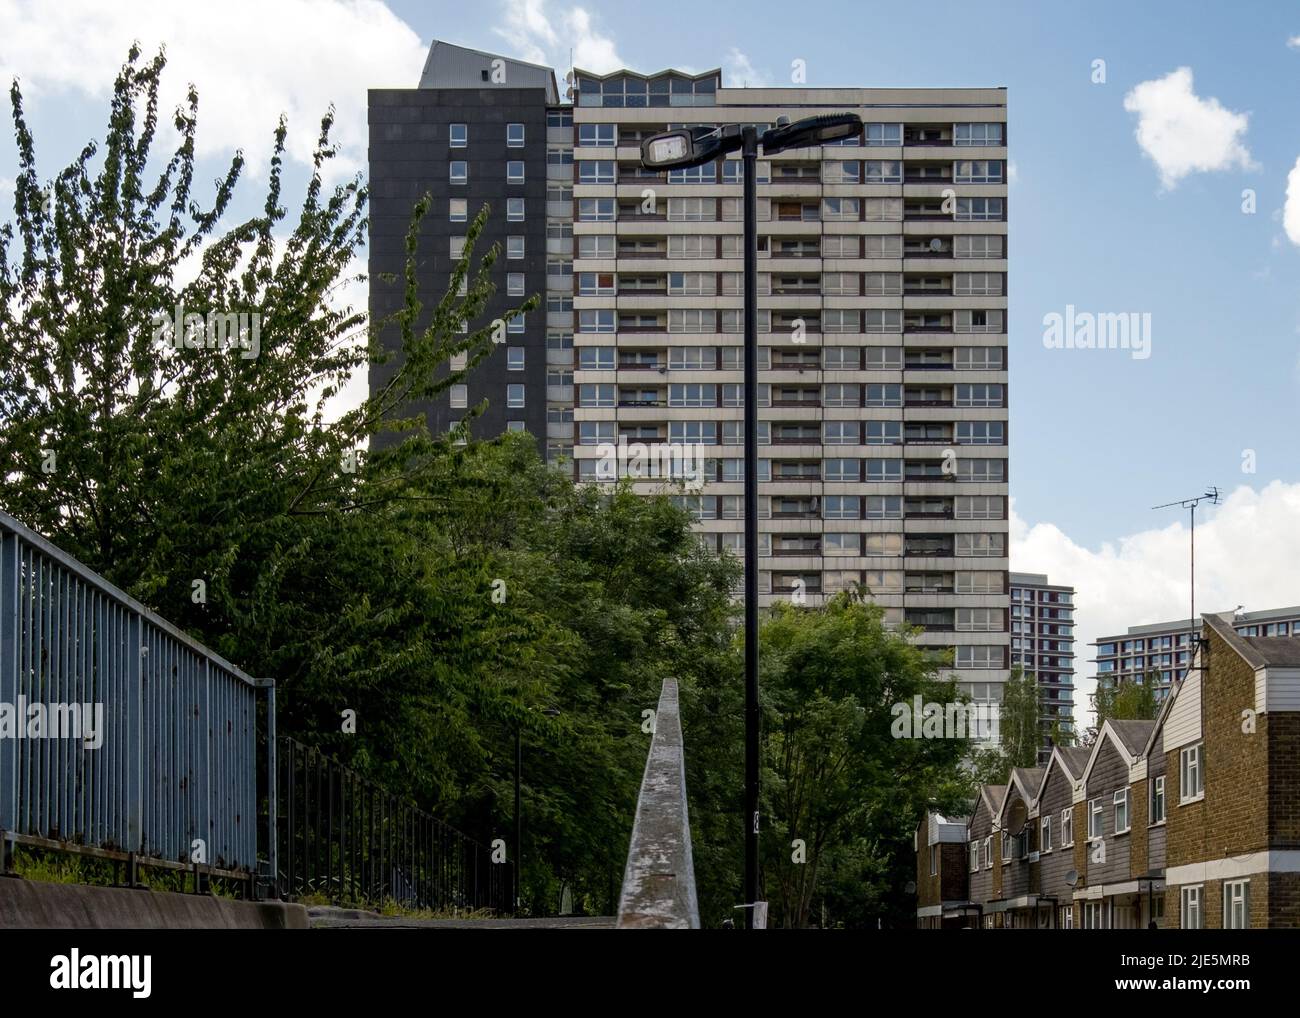 Leerer Turmblock - Dennison Point auf dem Carpenters Estate, Stratford, Newham, für Entwicklung bestimmt, London 2022 Stockfoto